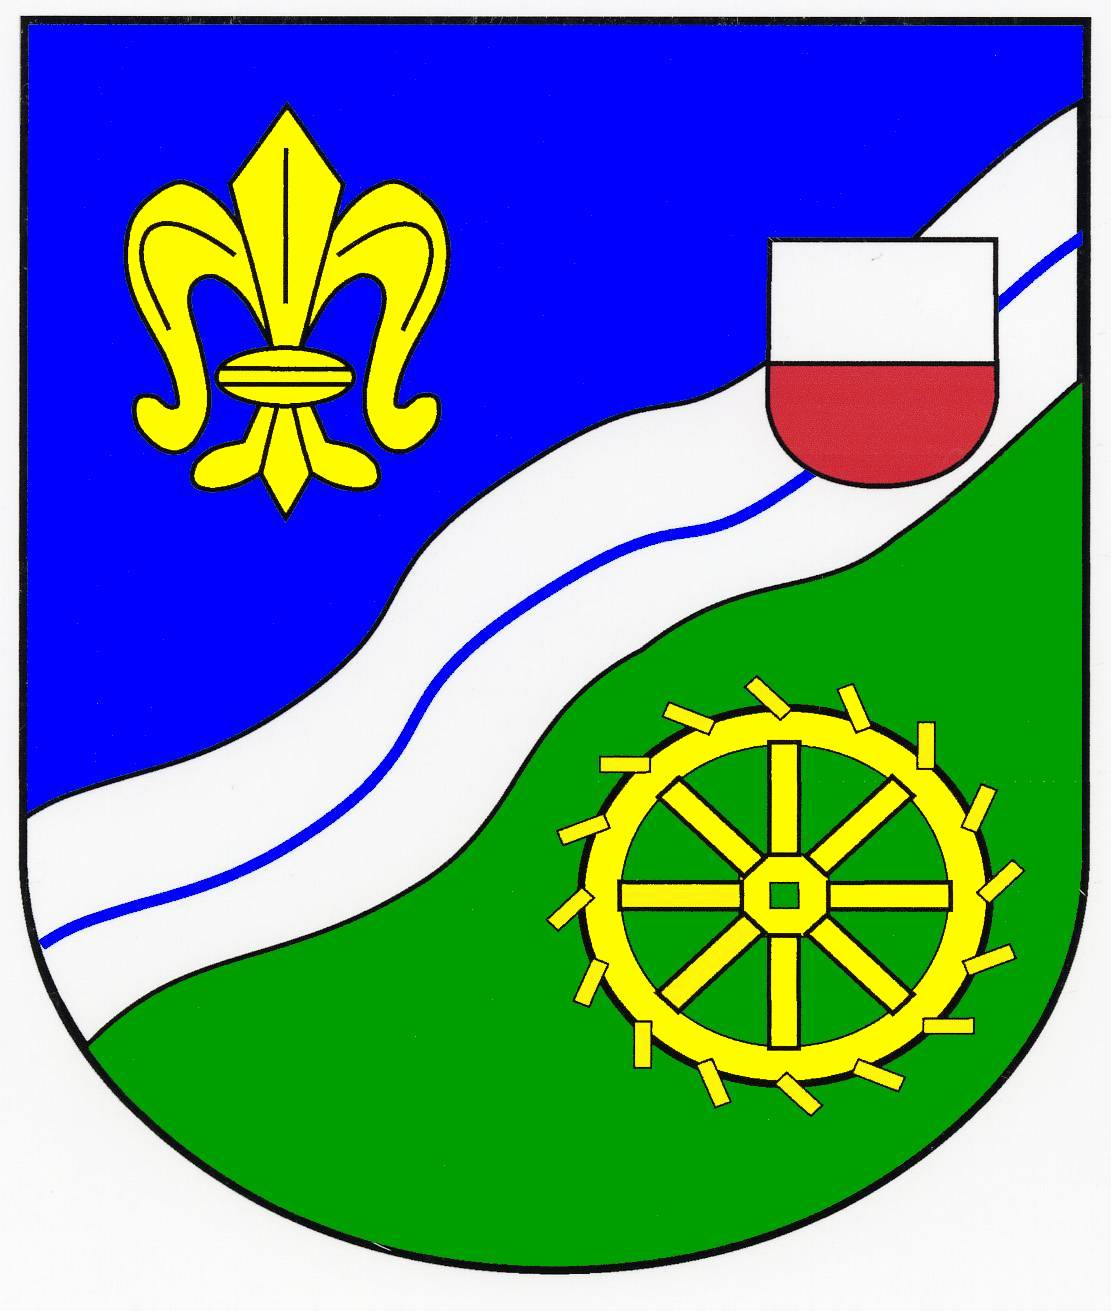 Wappen Gemeinde Hornbek, Kreis Herzogtum Lauenburg